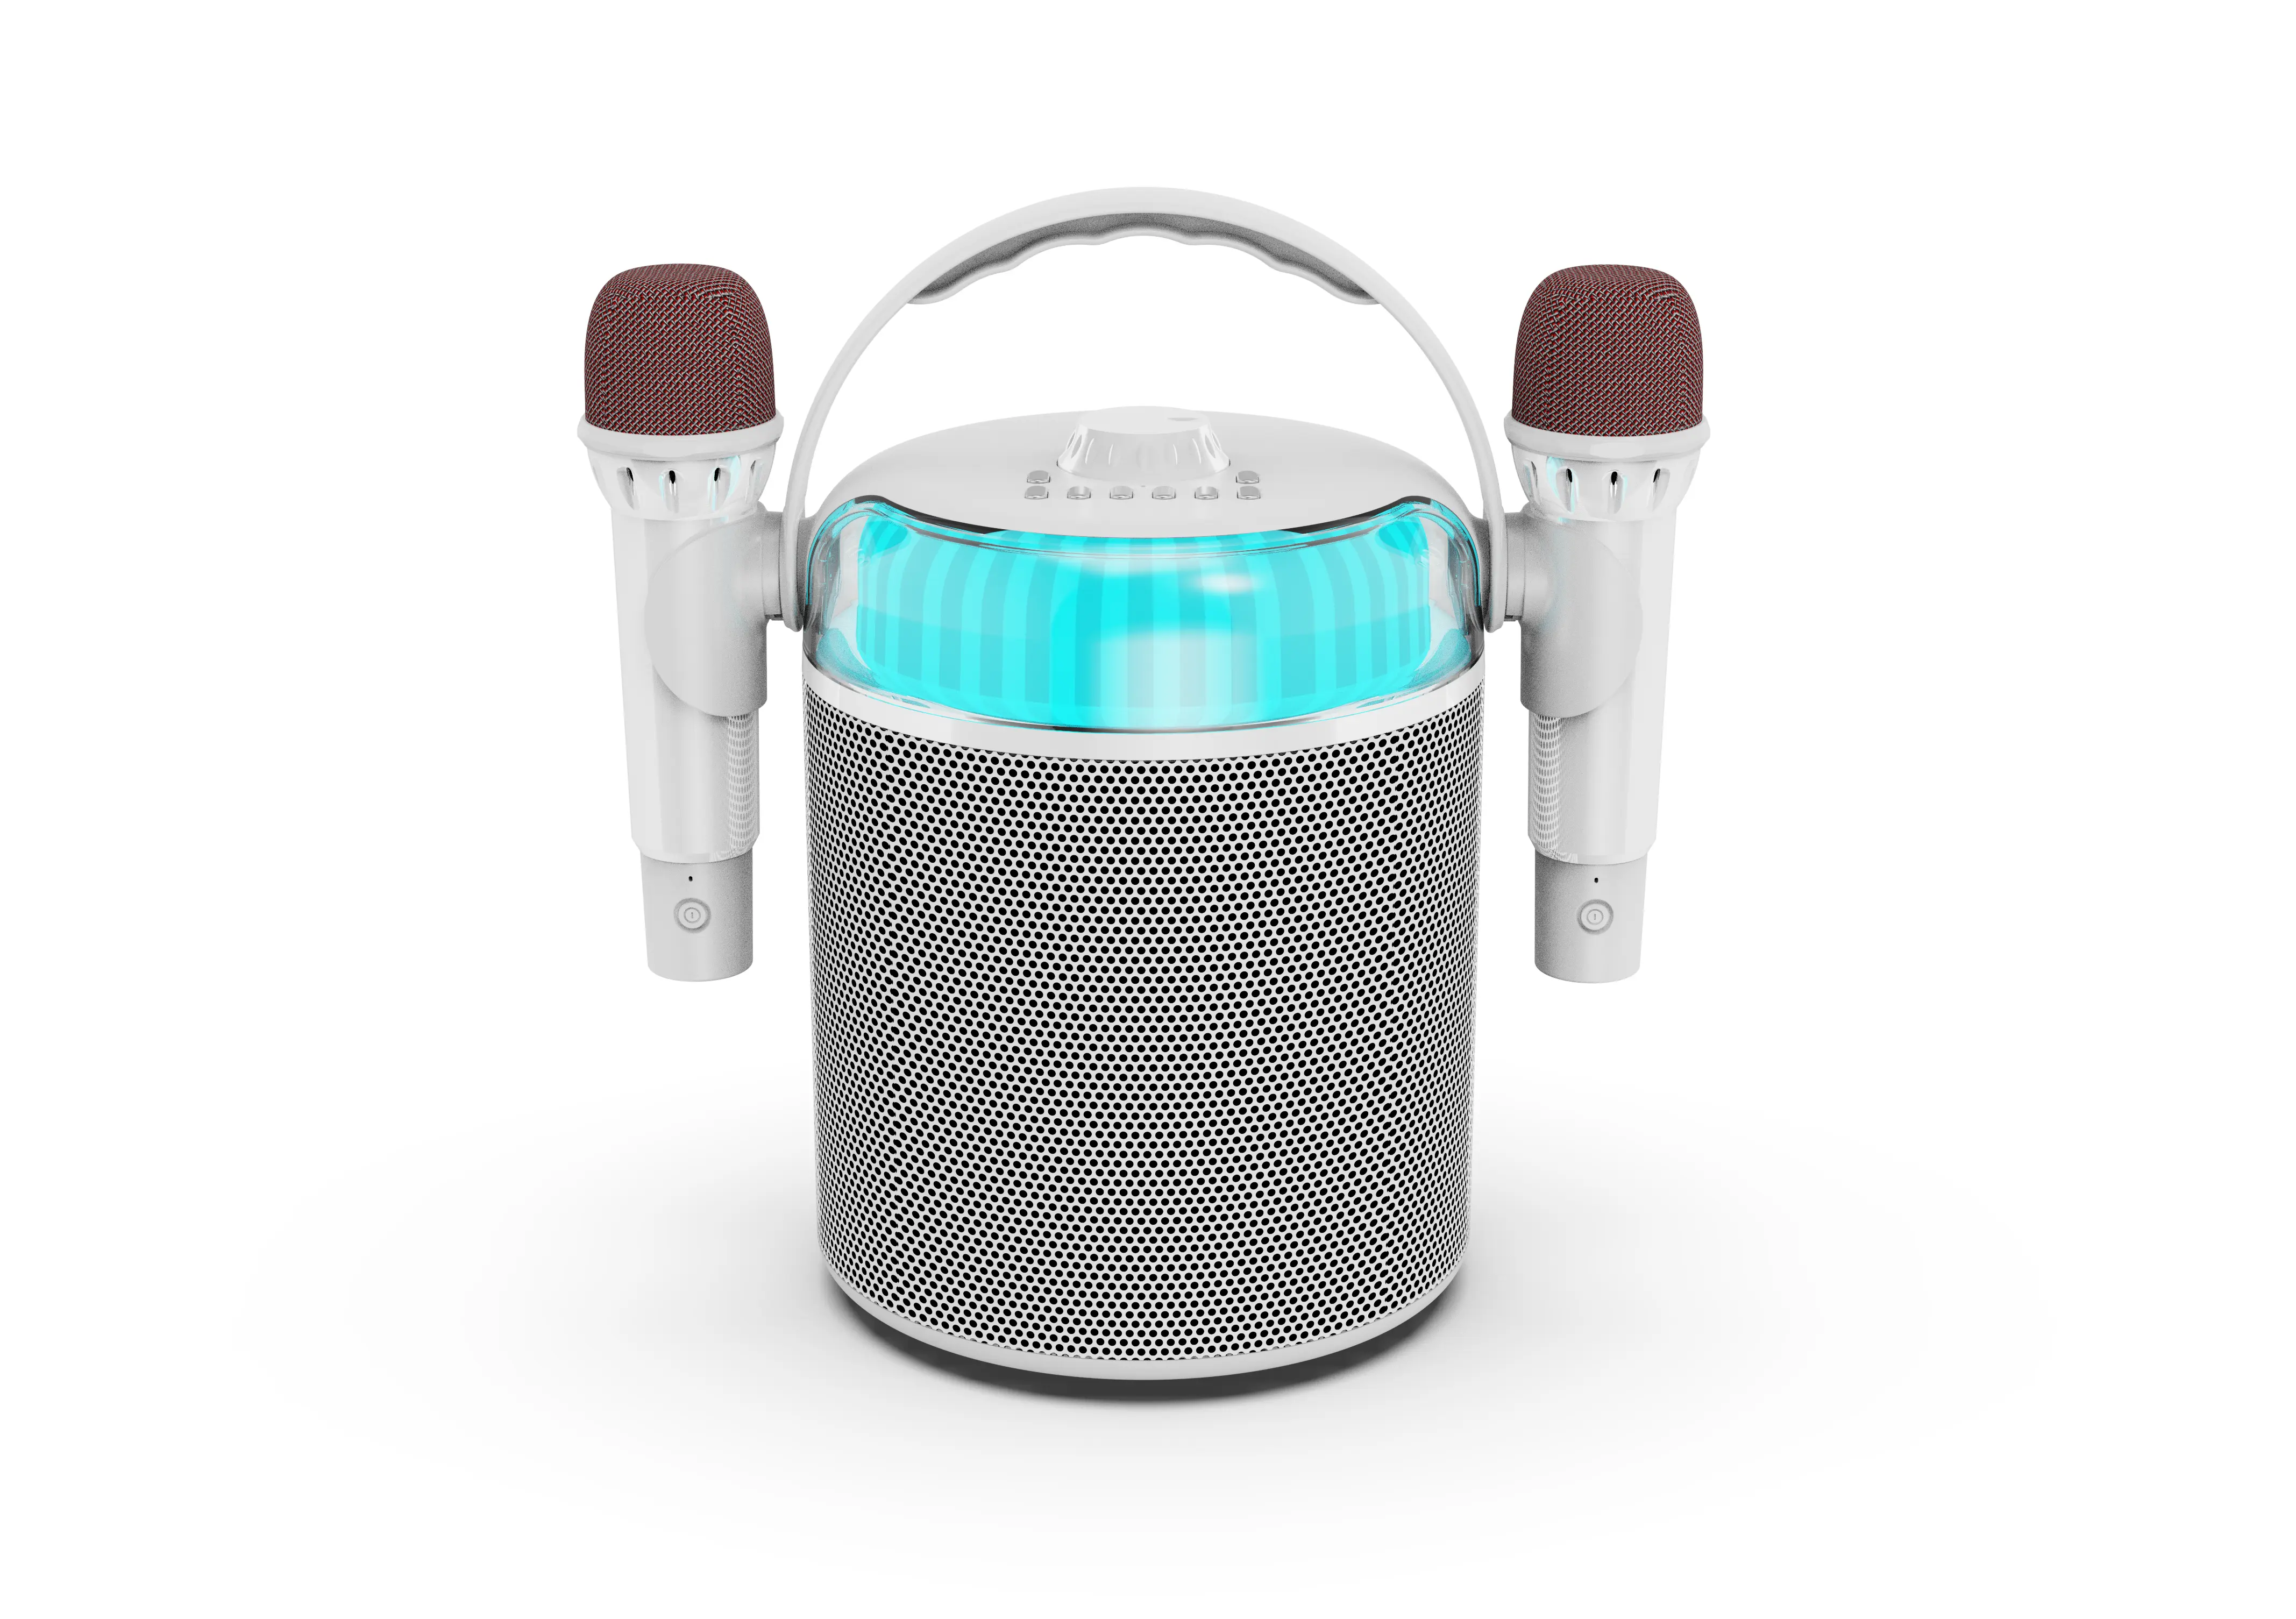 Nuovo per lo studio 6 LED altoparlante Bluetooth Subwoofer 12W impermeabile altoparlante senza fili